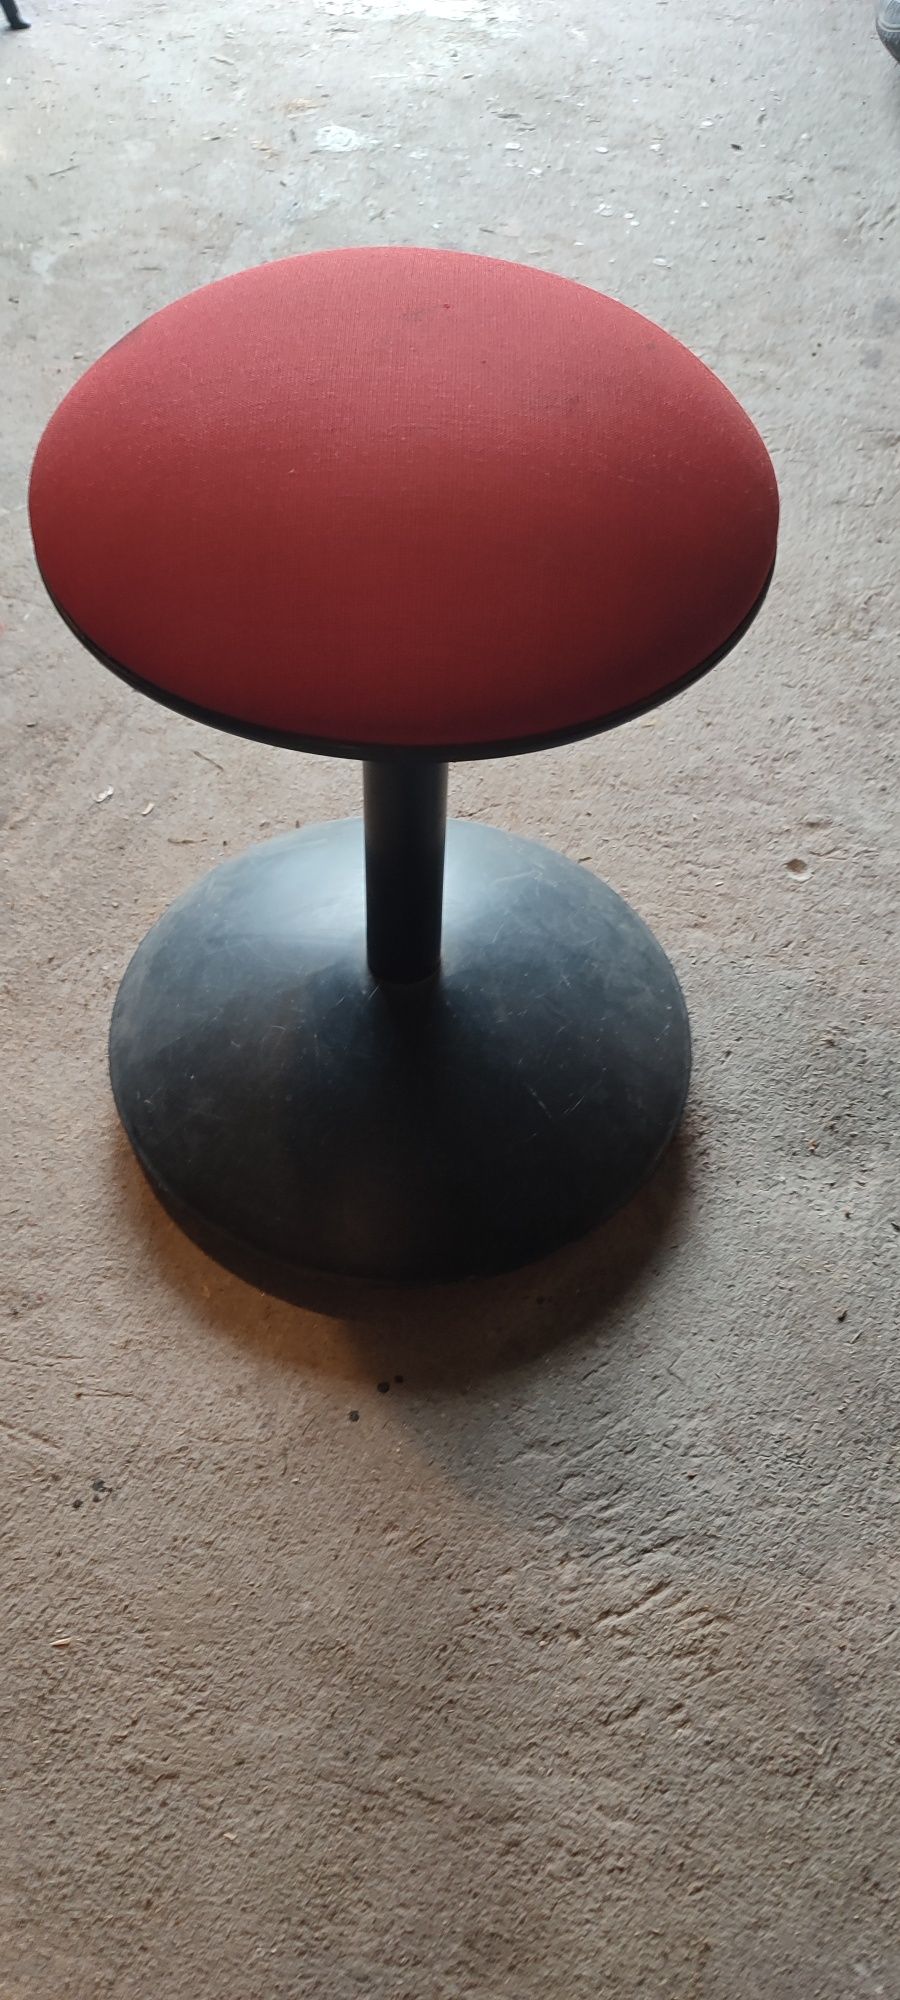 Stołek do biurka Ikea regulowana wysokość 45-65 cm